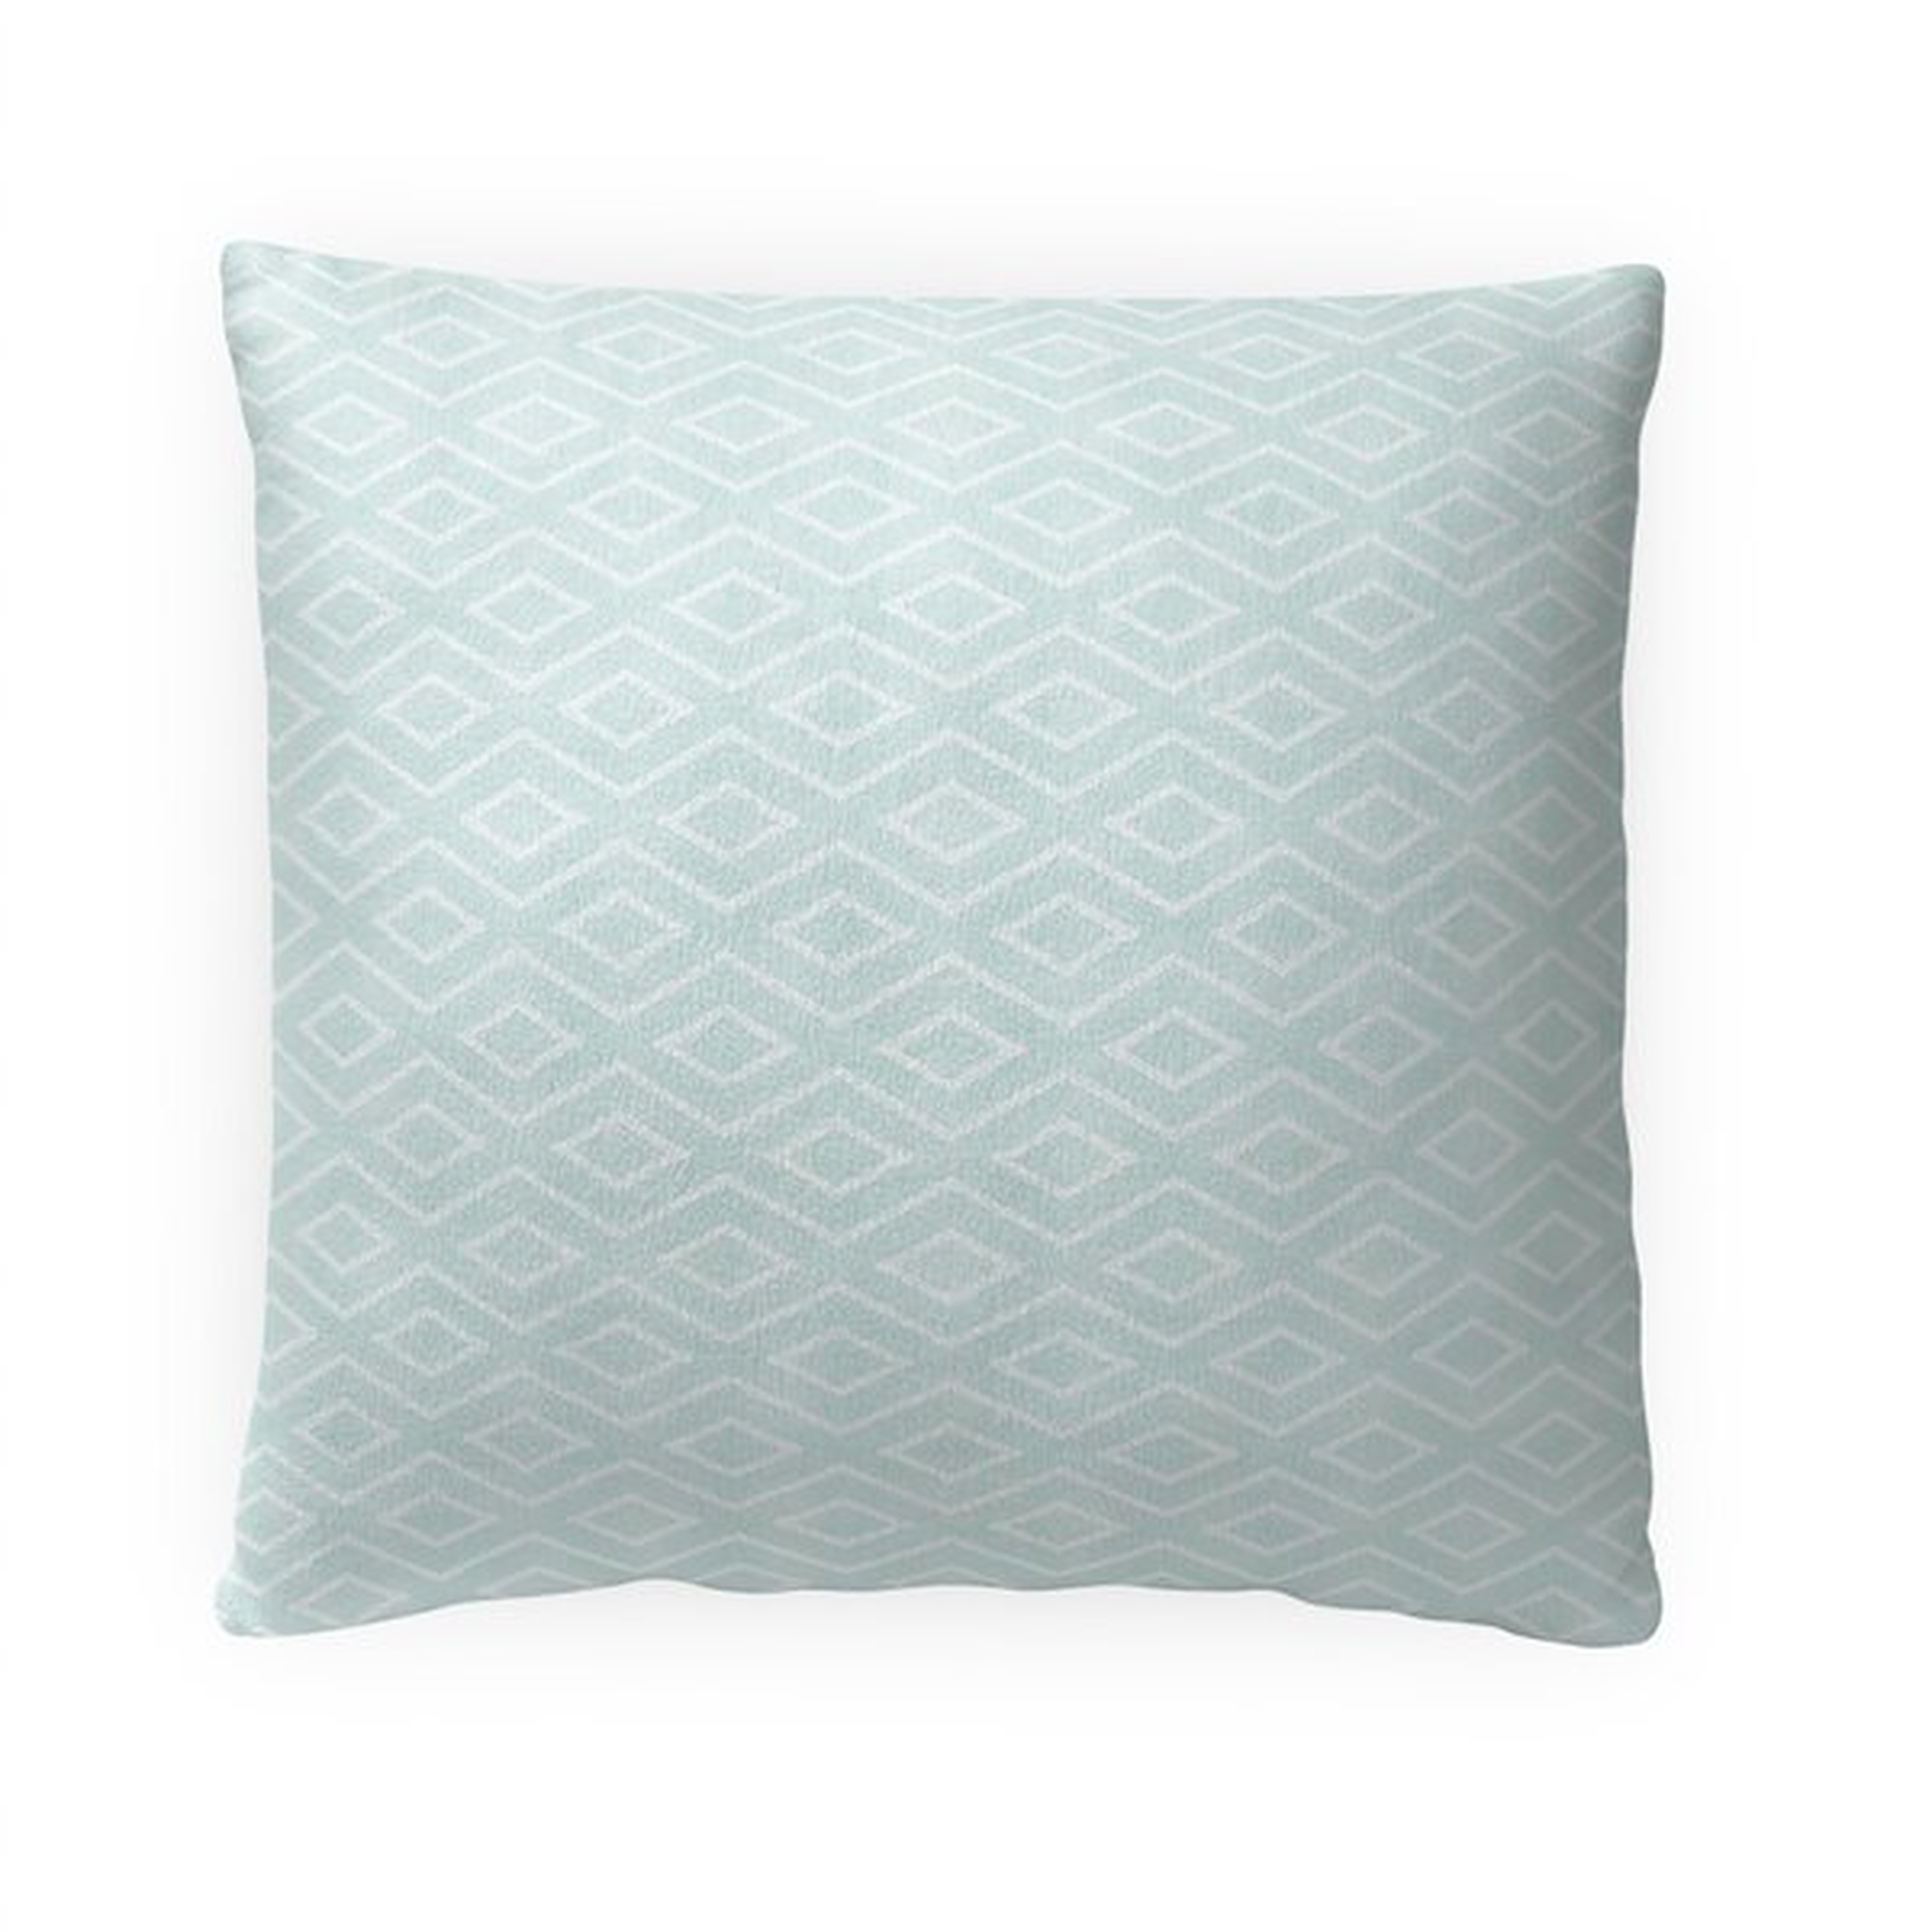 Cartley Geometric Throw Pillow - Wayfair